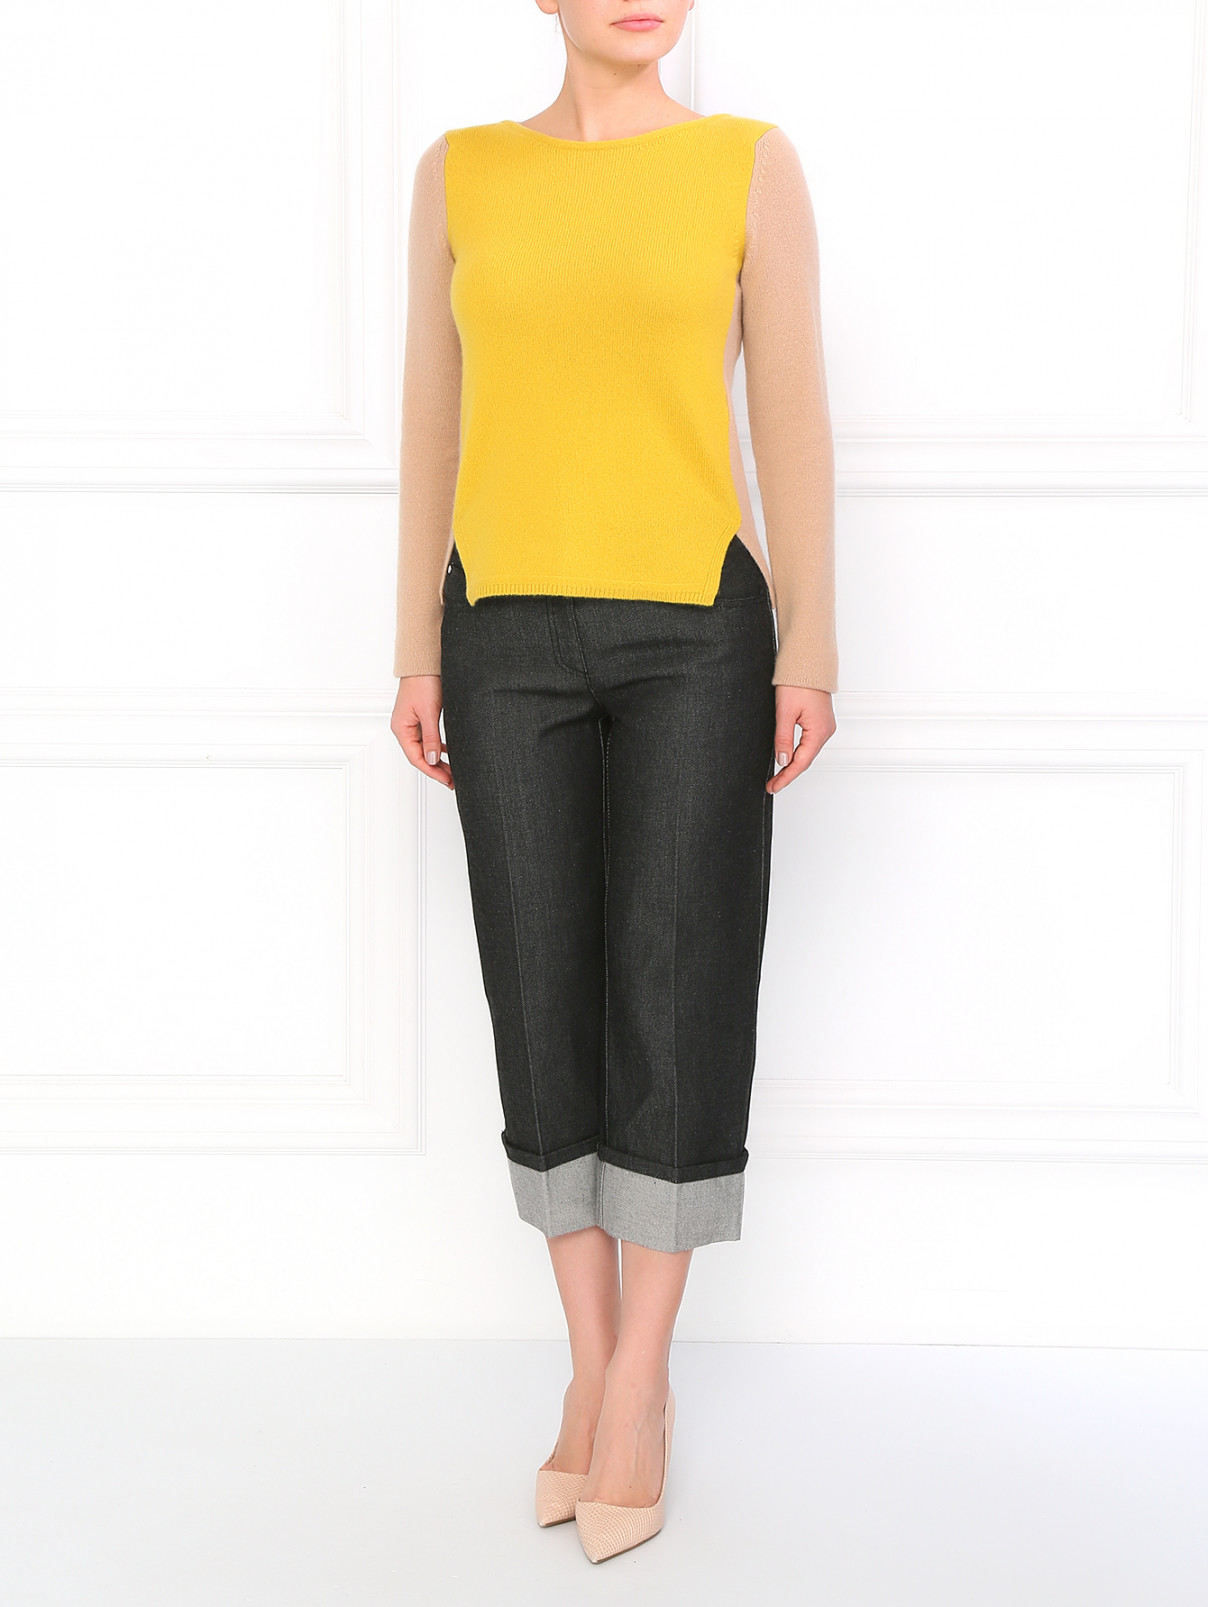 Прямые джинсы с отворотами Michael Kors  –  Модель Общий вид  – Цвет:  Серый